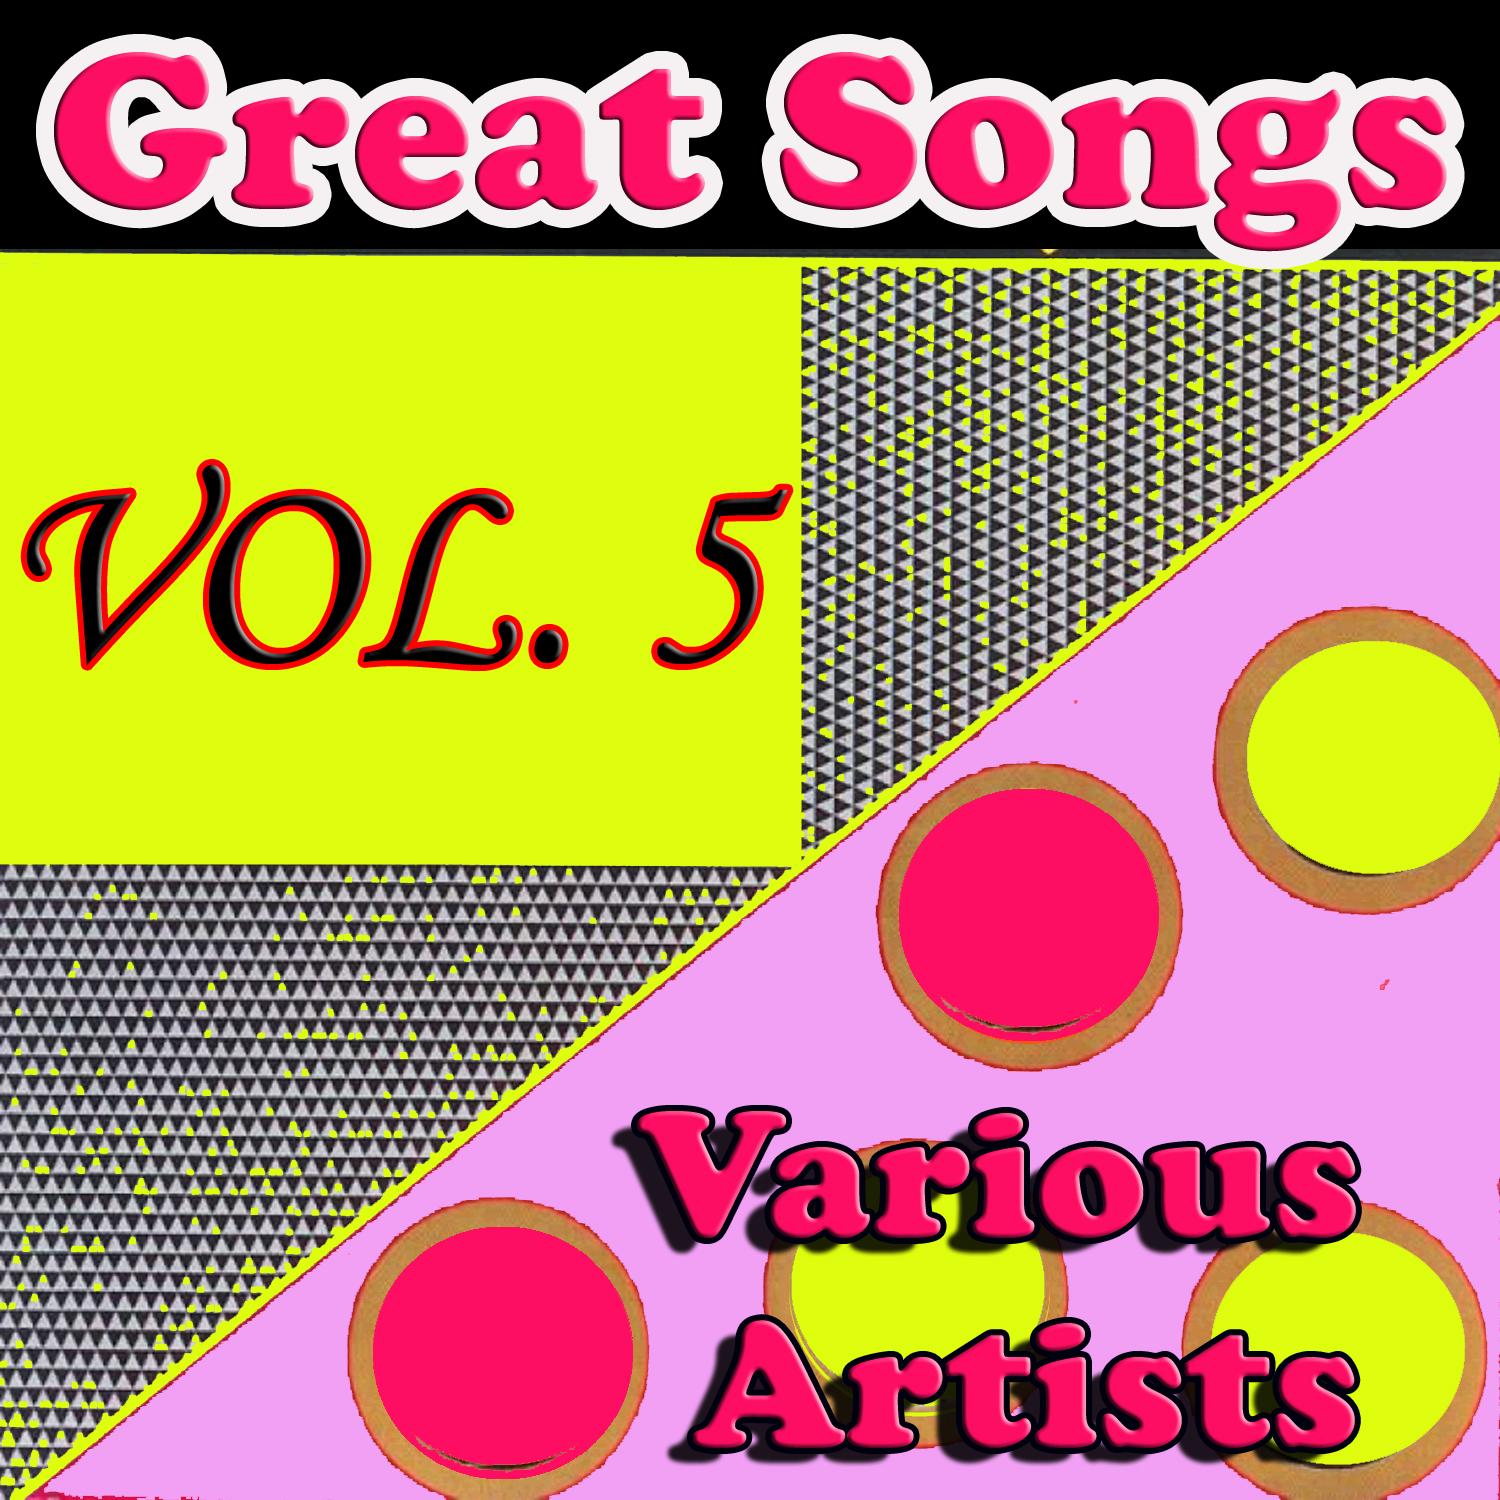 Great Songs, Vol. 5